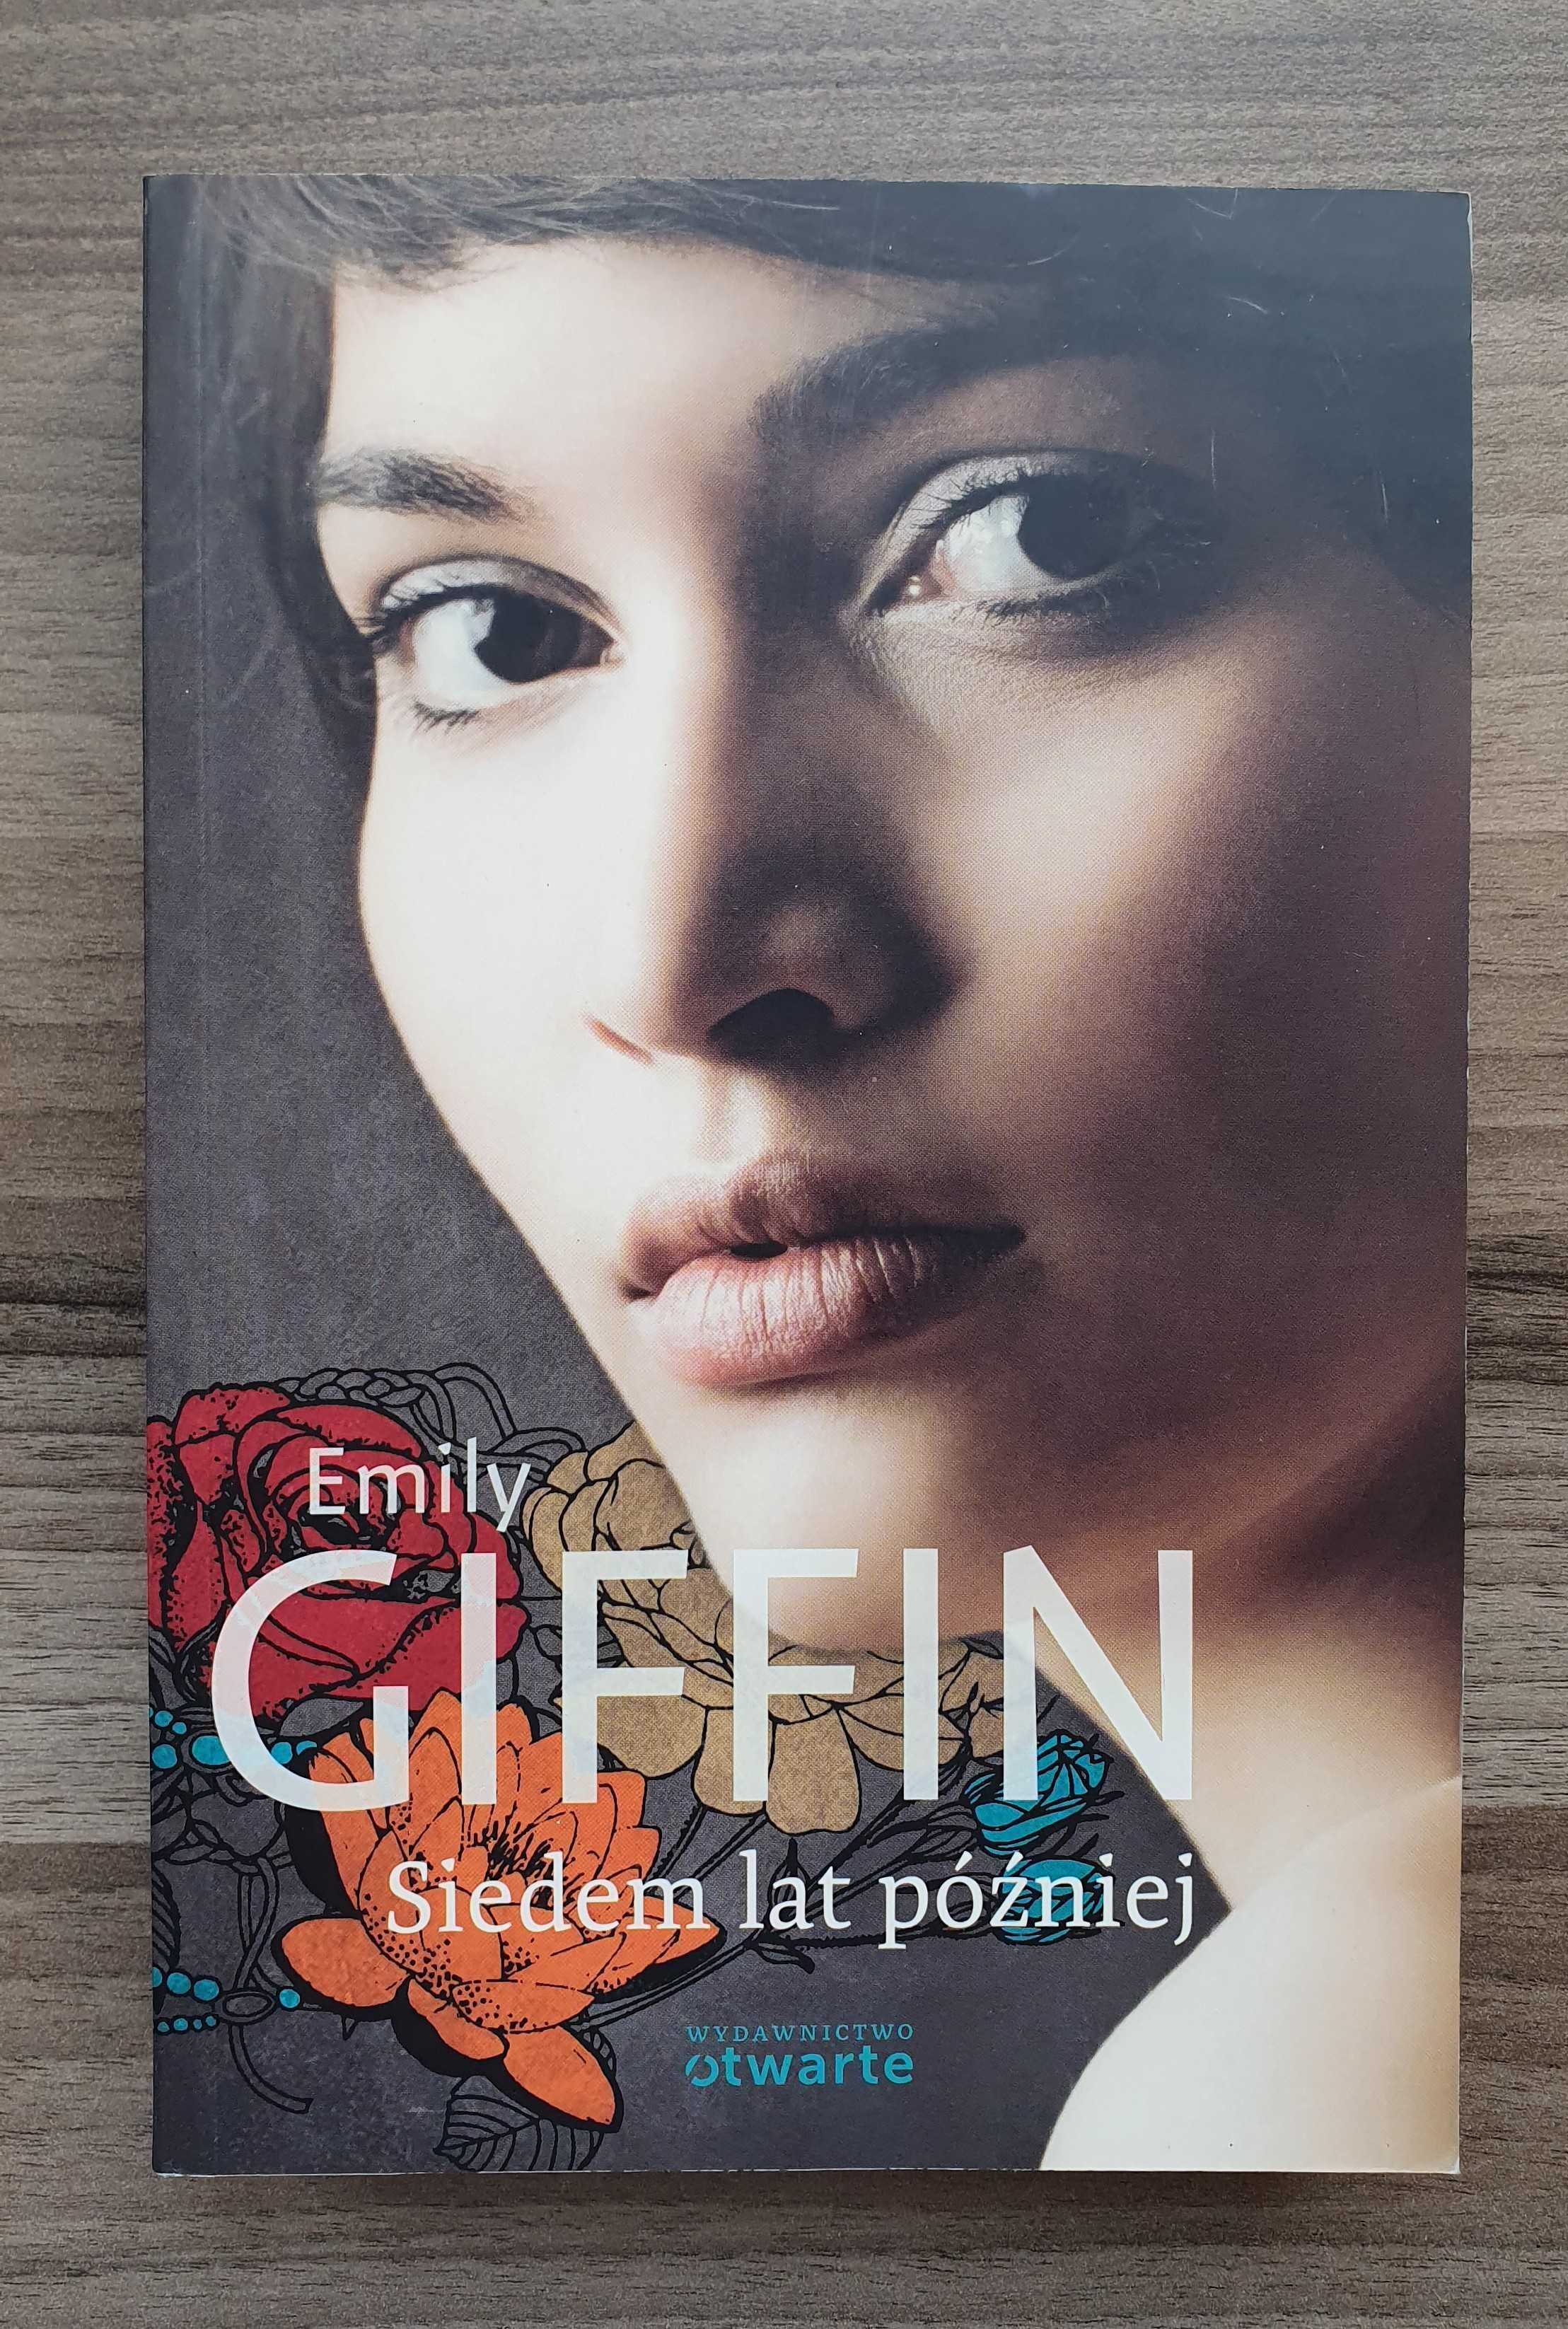 Książka "Siedem lat później" Emily Giffin